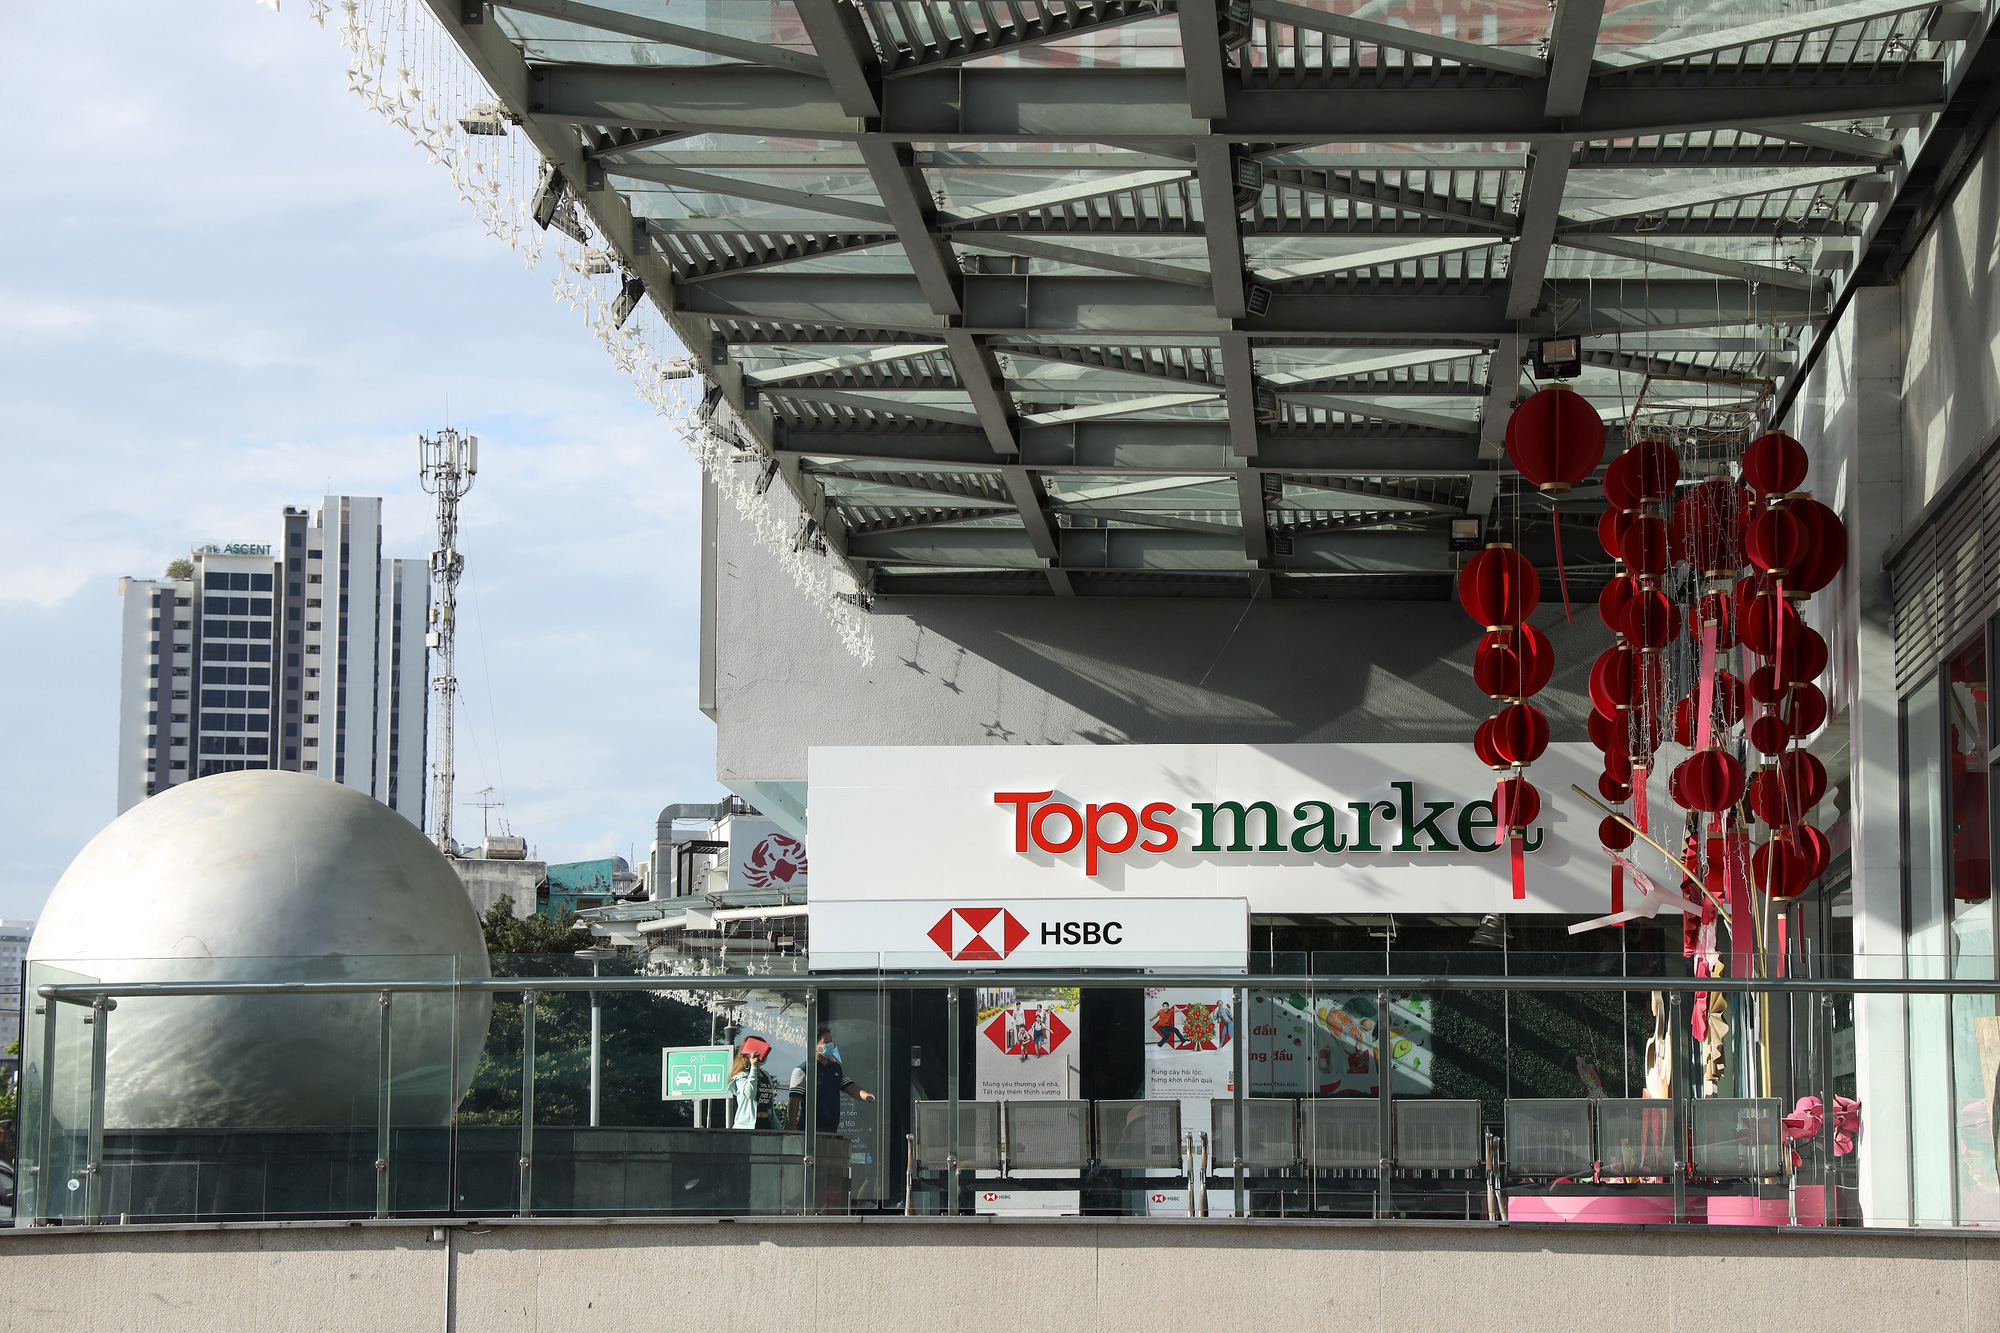 Long-standing supermarket brand Big C renamed in Vietnam